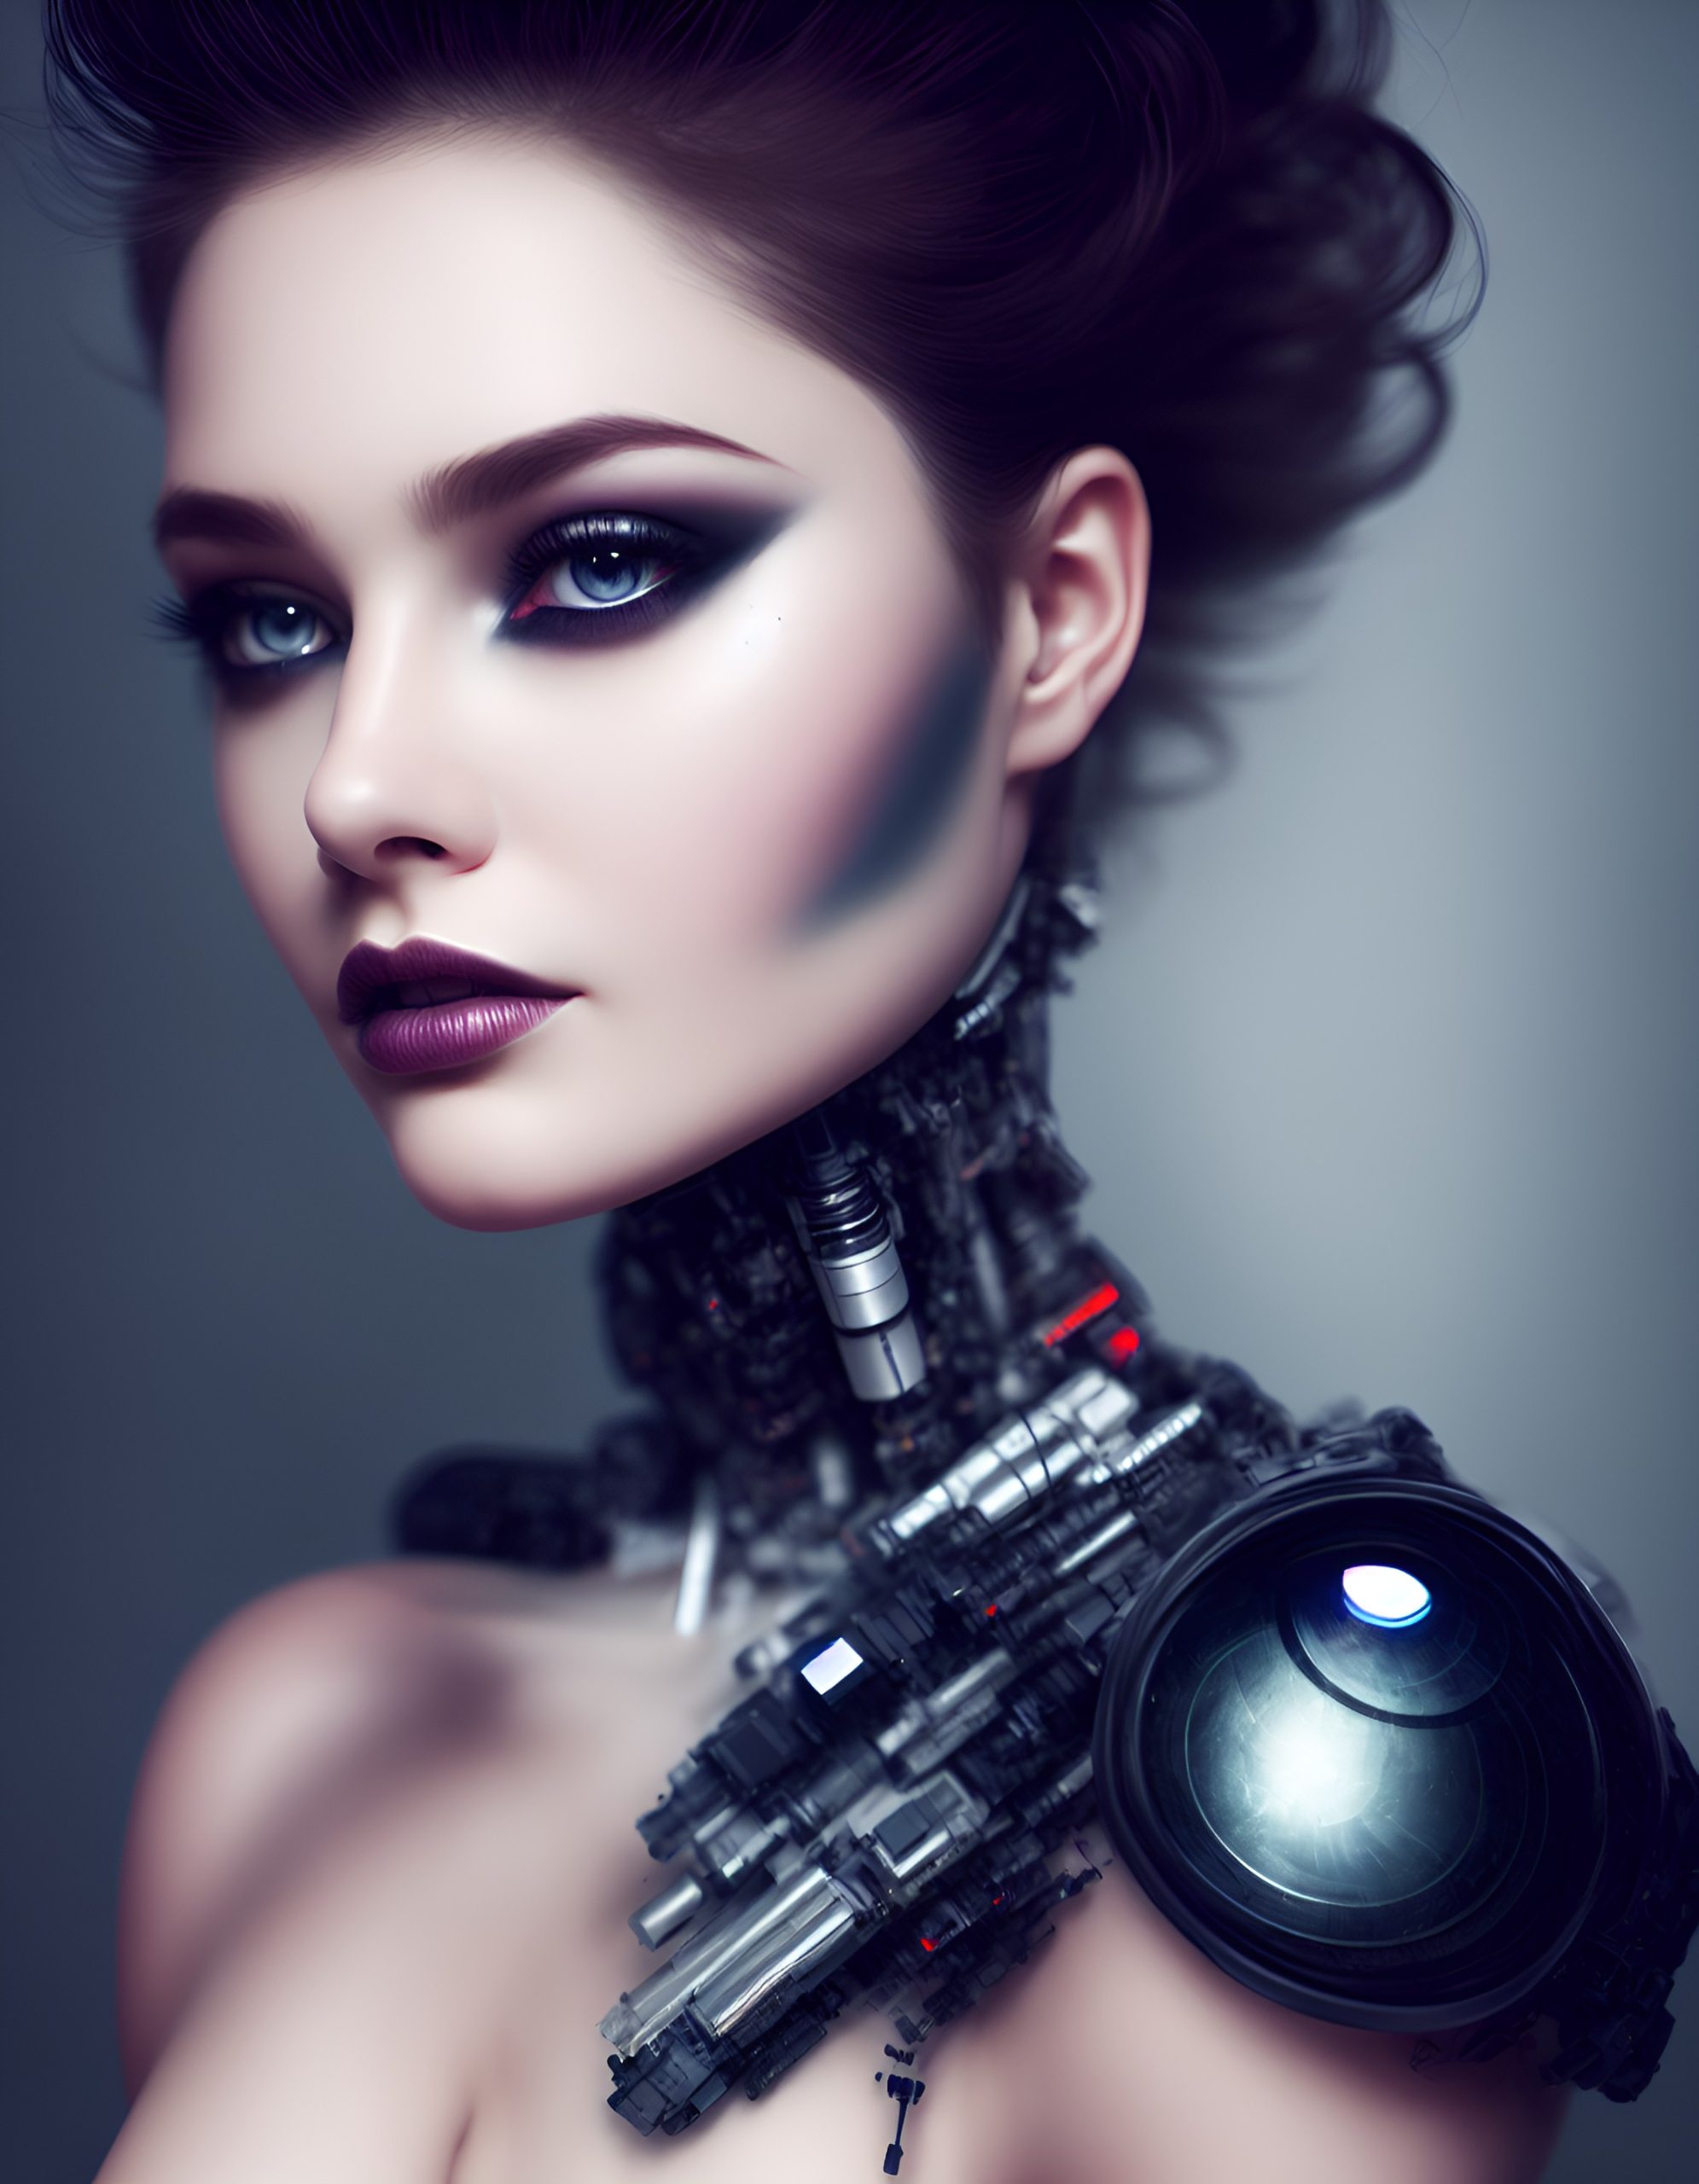 Default beautiful robot dark makeup hyperdetailed photography soft li 2 4a694007 b84f 47be b926 c09d30b563d9 1 scaled